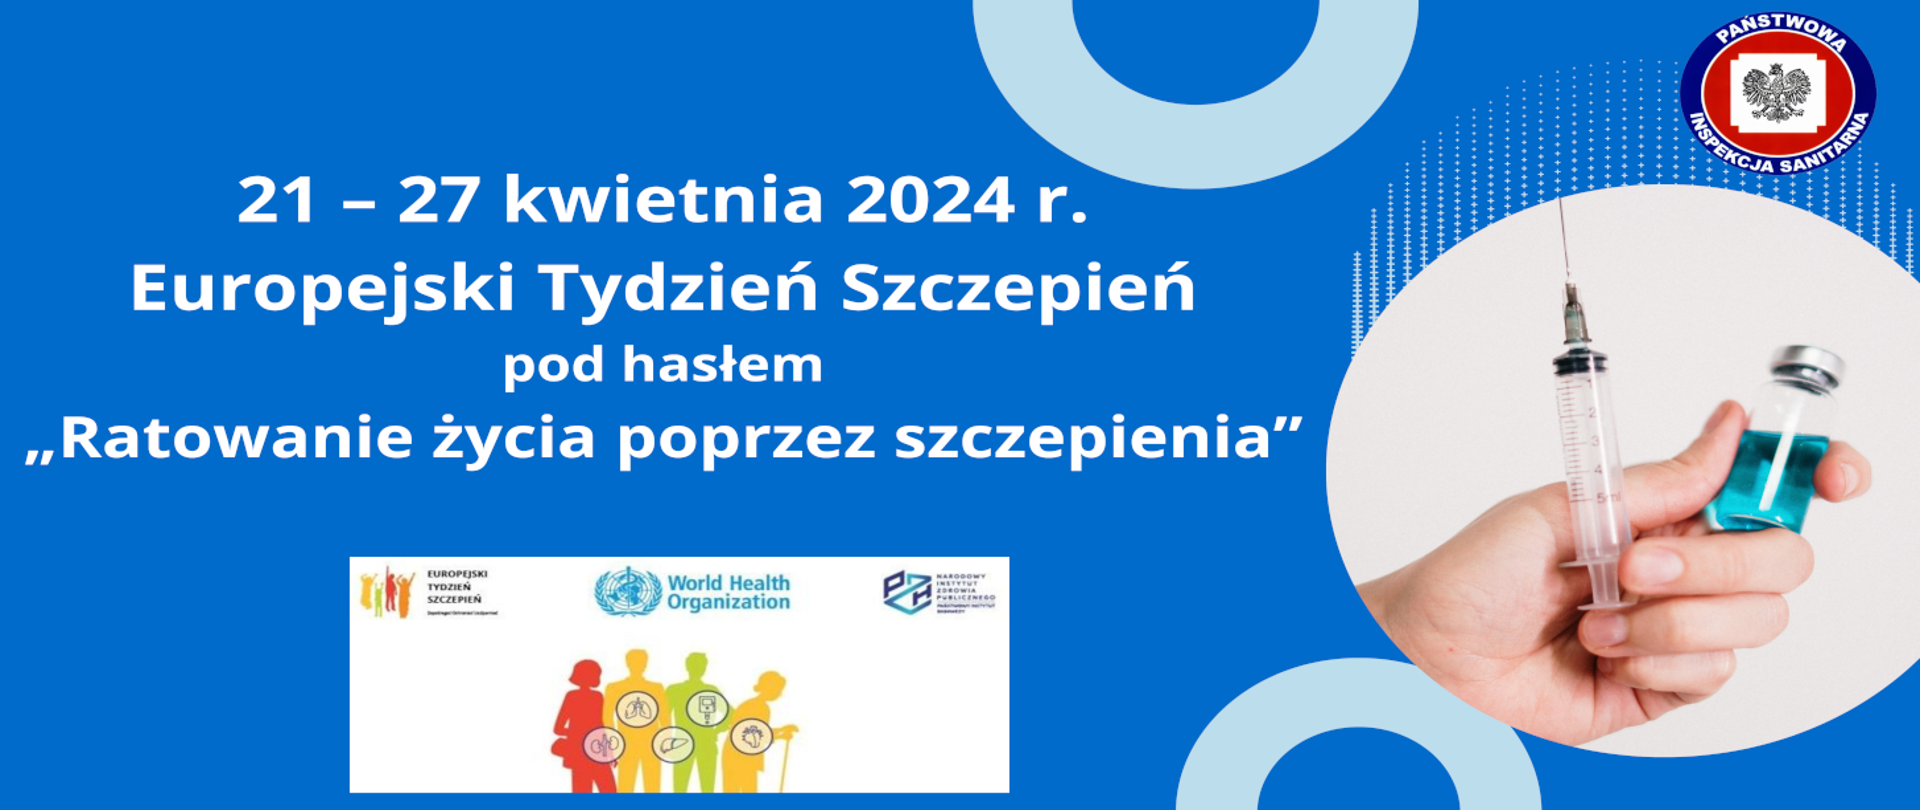 Plakat z napisem "21–27 kwietnia 2024 r. - Europejski Tydzień Szczepień" oraz zdjęciem strzykawki